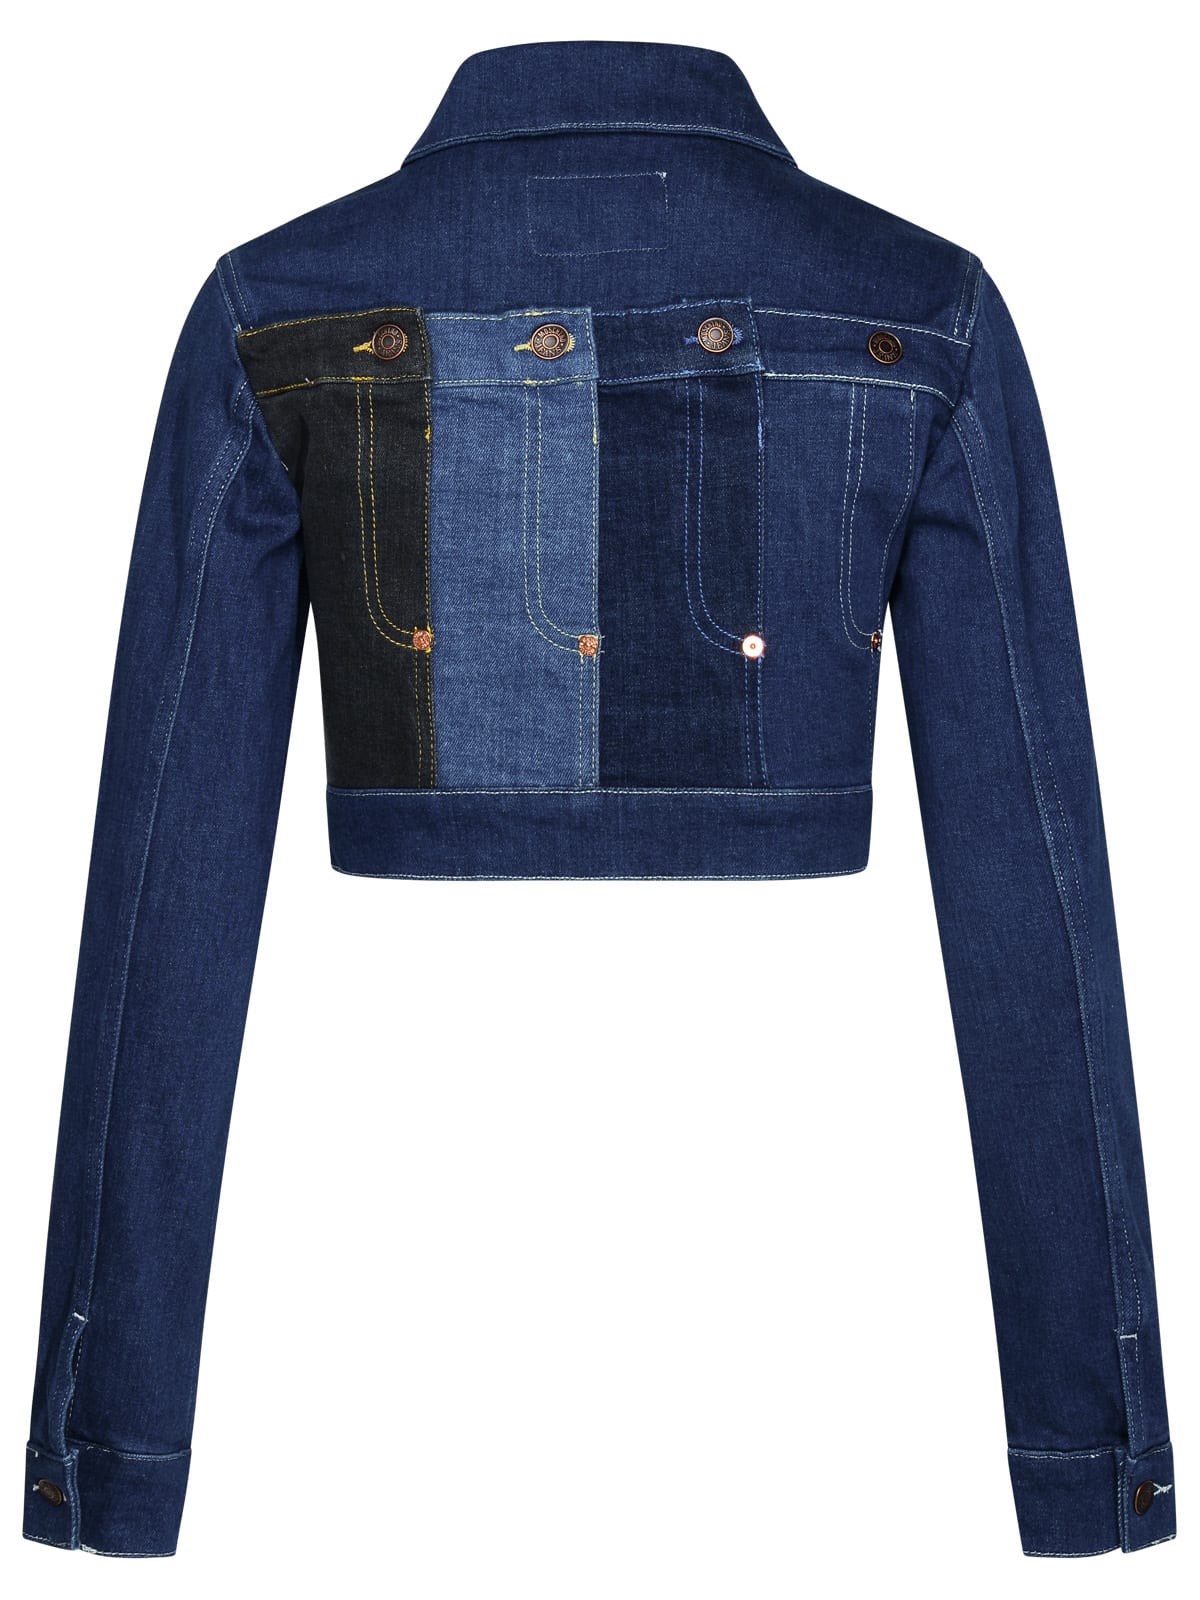 Shop M05ch1n0 Jeans Blue Cotton Jacket